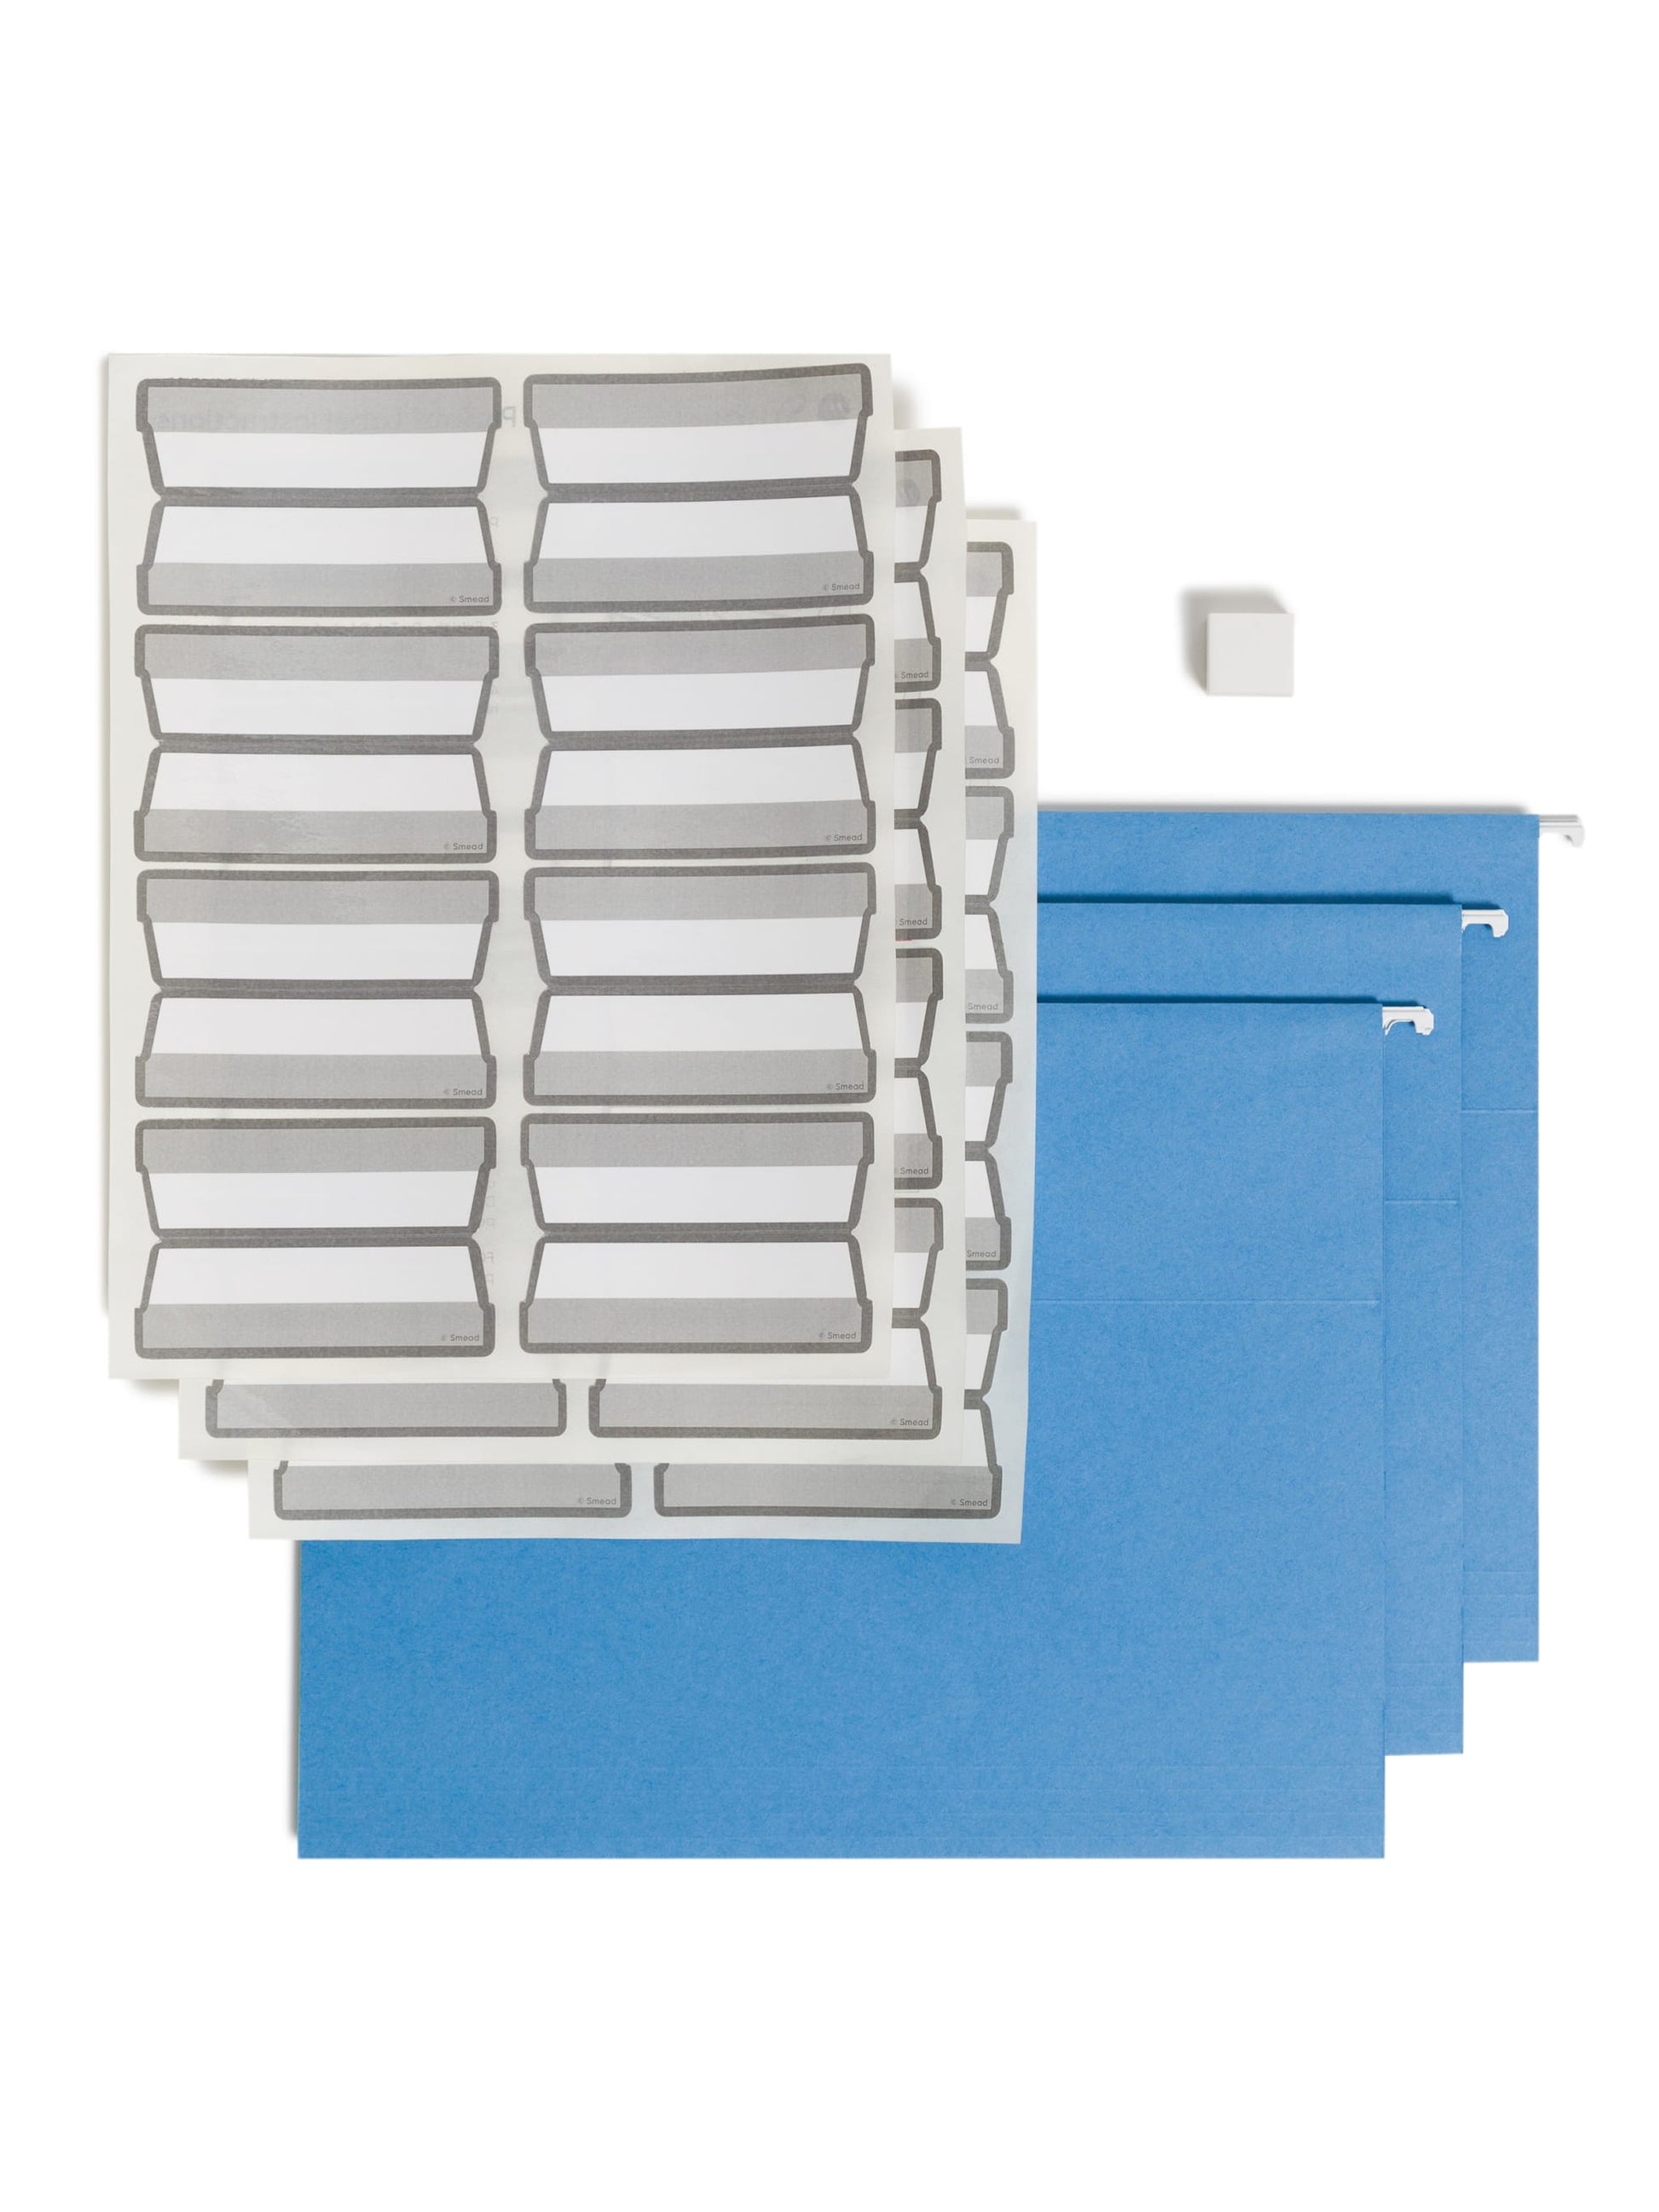 Protab® Filing System Start Kit, Blue Color, Letter Size, 086486642101